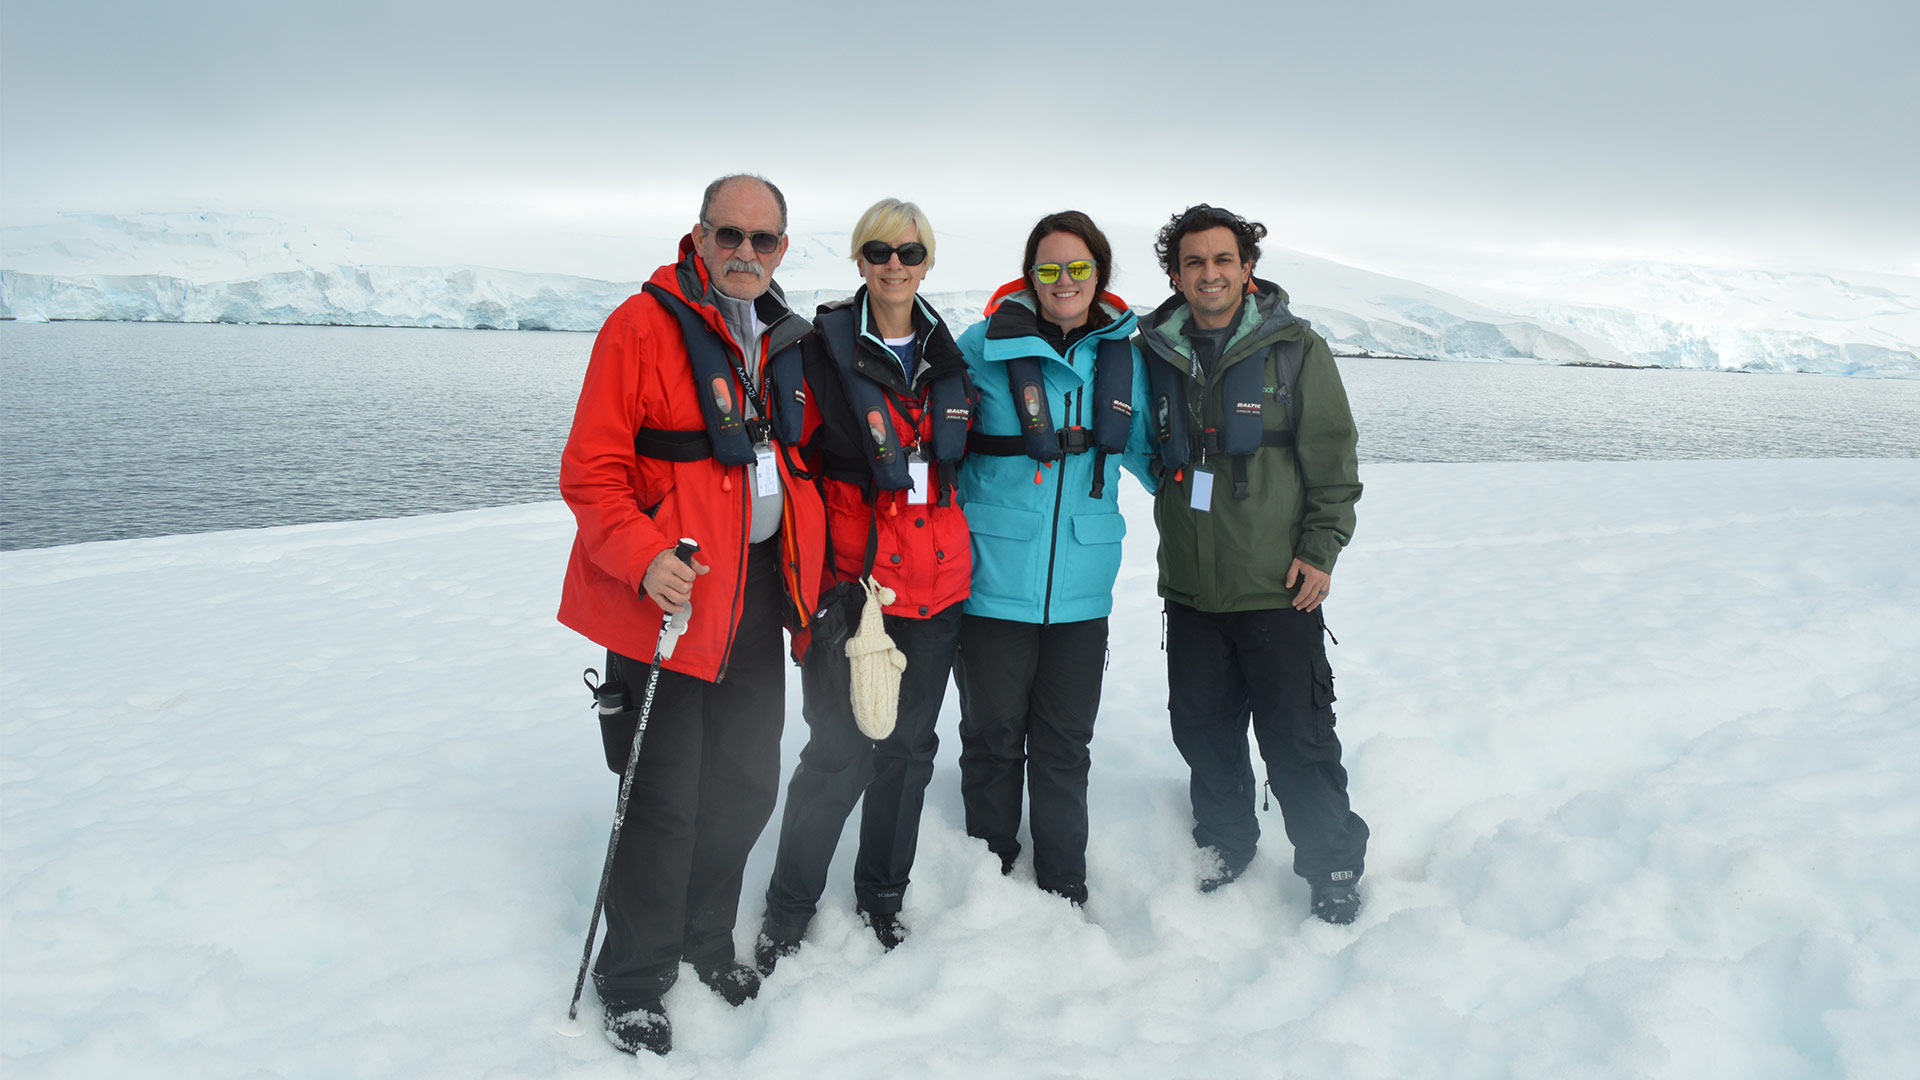 48 hours in Antarctica, Antarctica21 traveler story